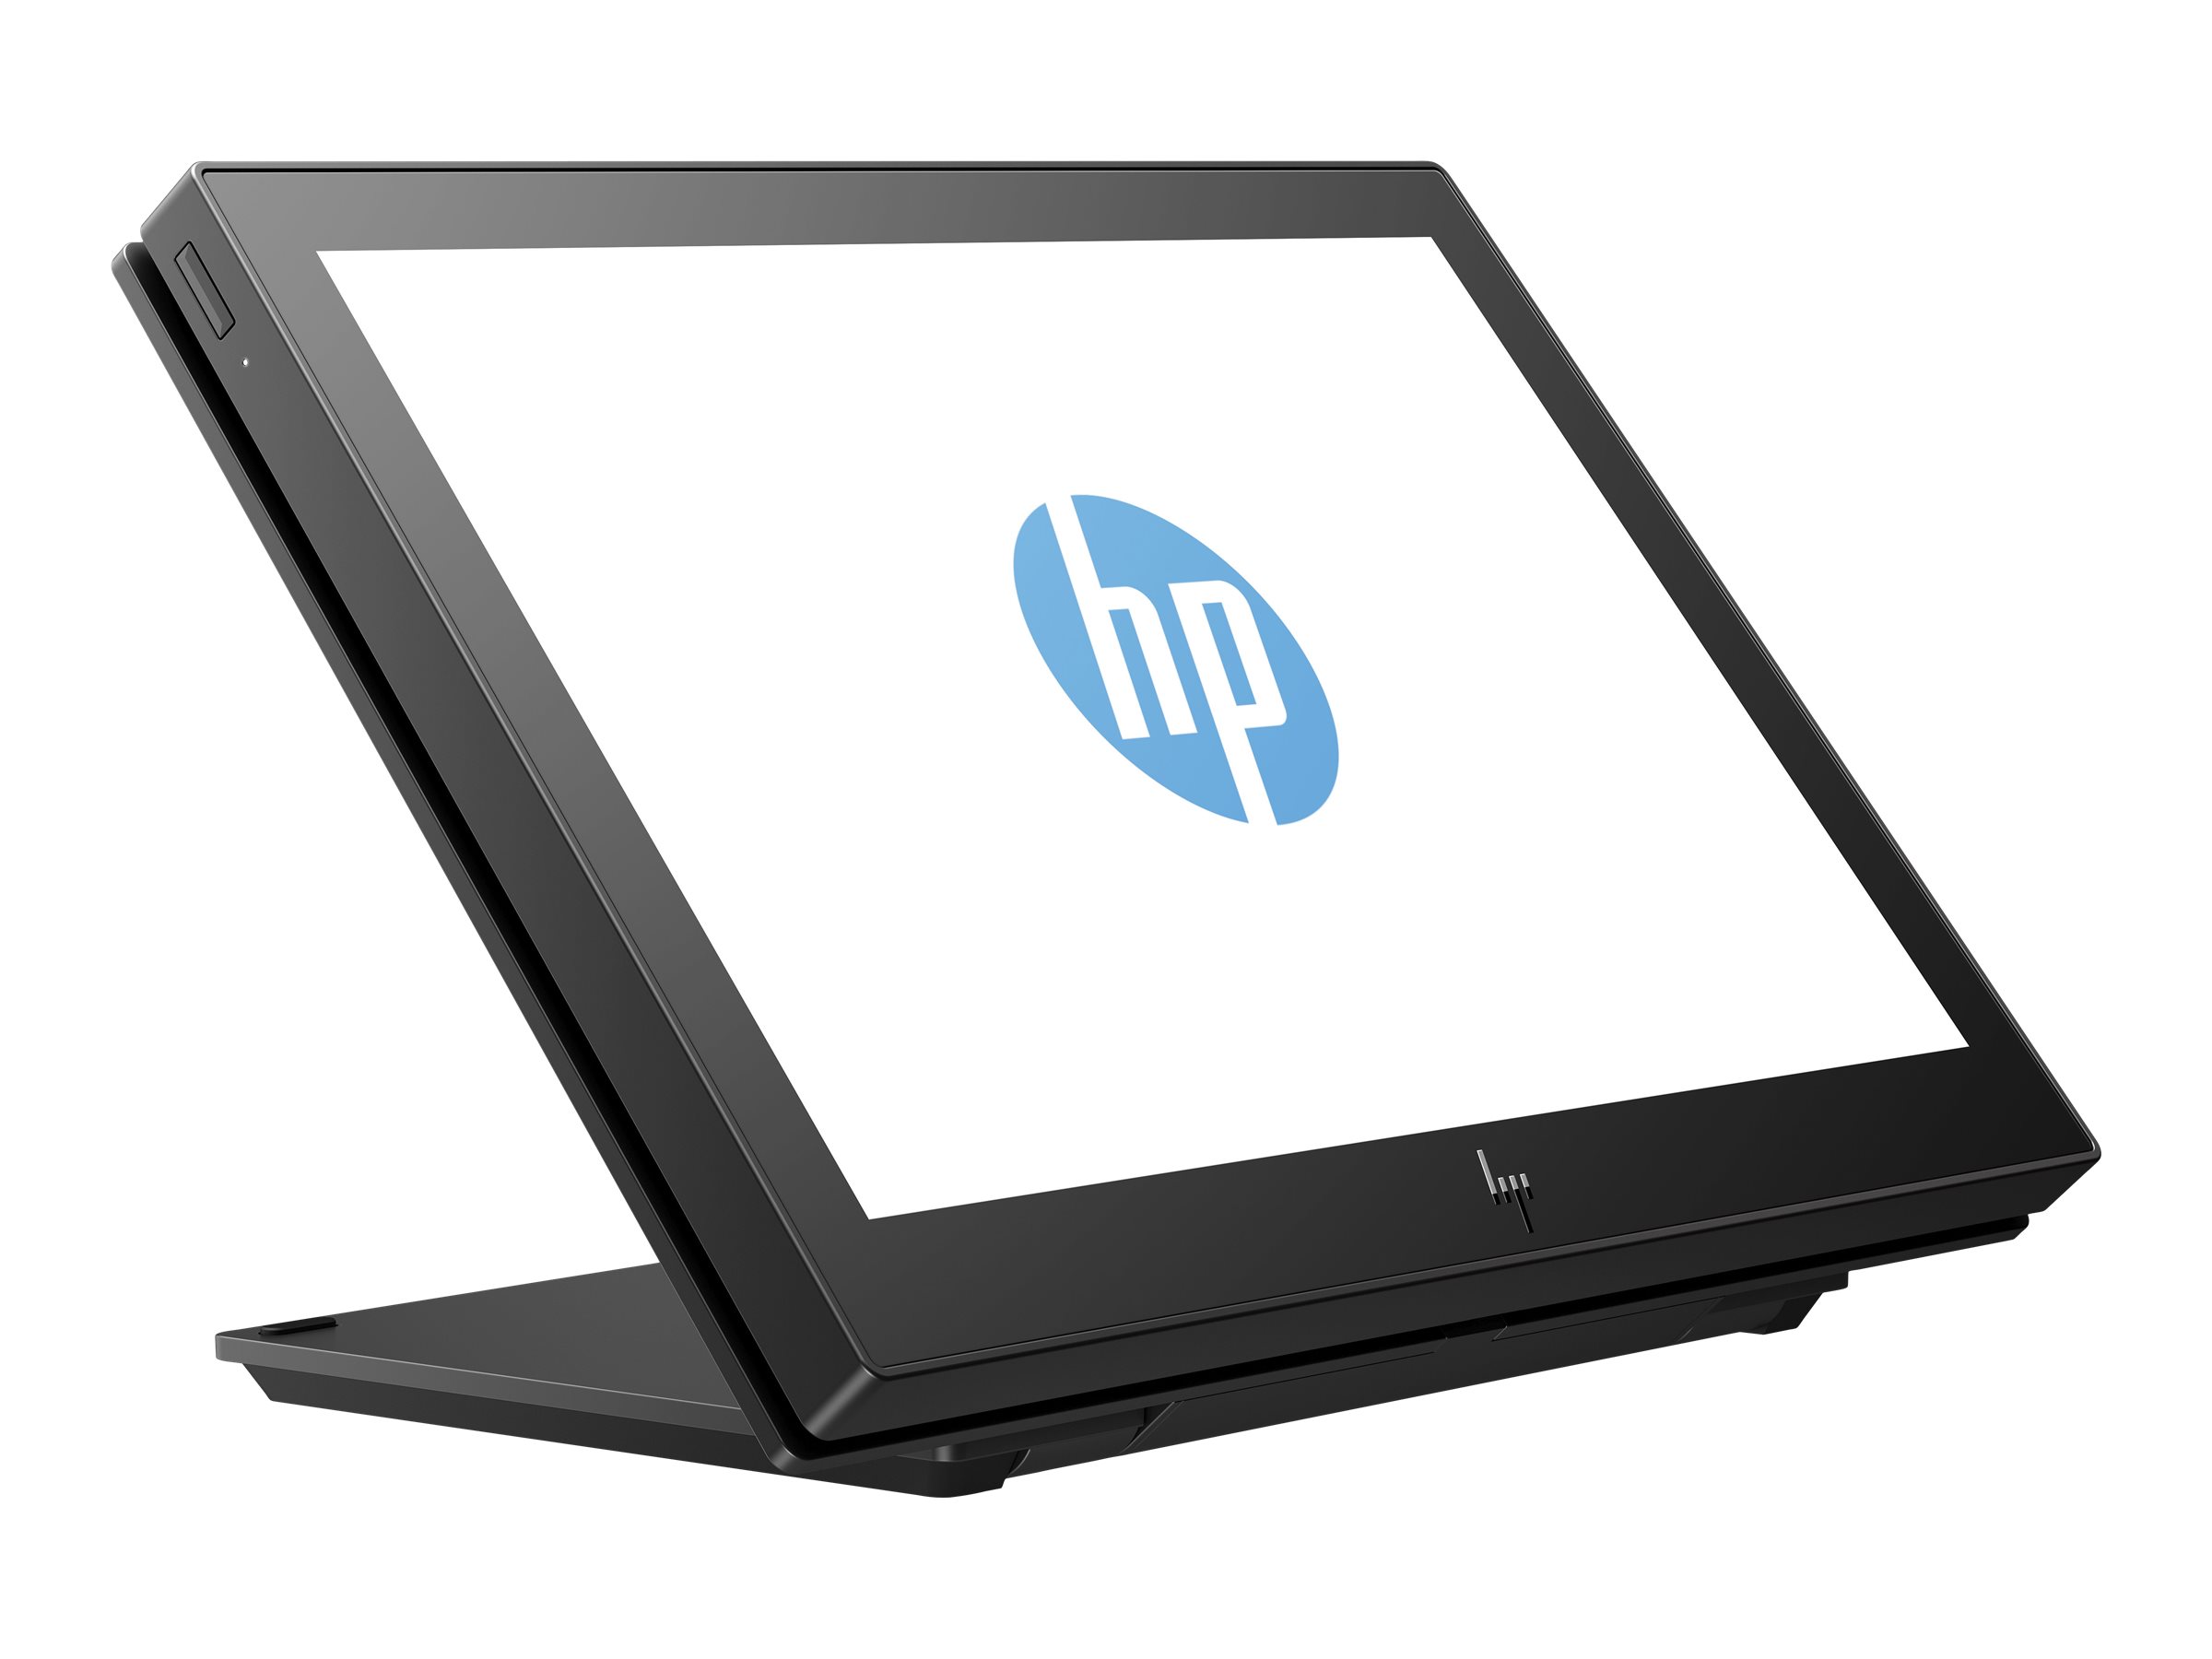 HP Engage One 10t - Affichage client - 10.1" - écran tactile - 1280 x 800 @ 60 Hz - IPS - 25 ms - pour EliteBook 745 G5, 830 G5, 830 G6, 840 G5, 840 G6; Portable Essential, Pro; ZBook Studio G4 - 1XD81AA - Écrans pour point de vente